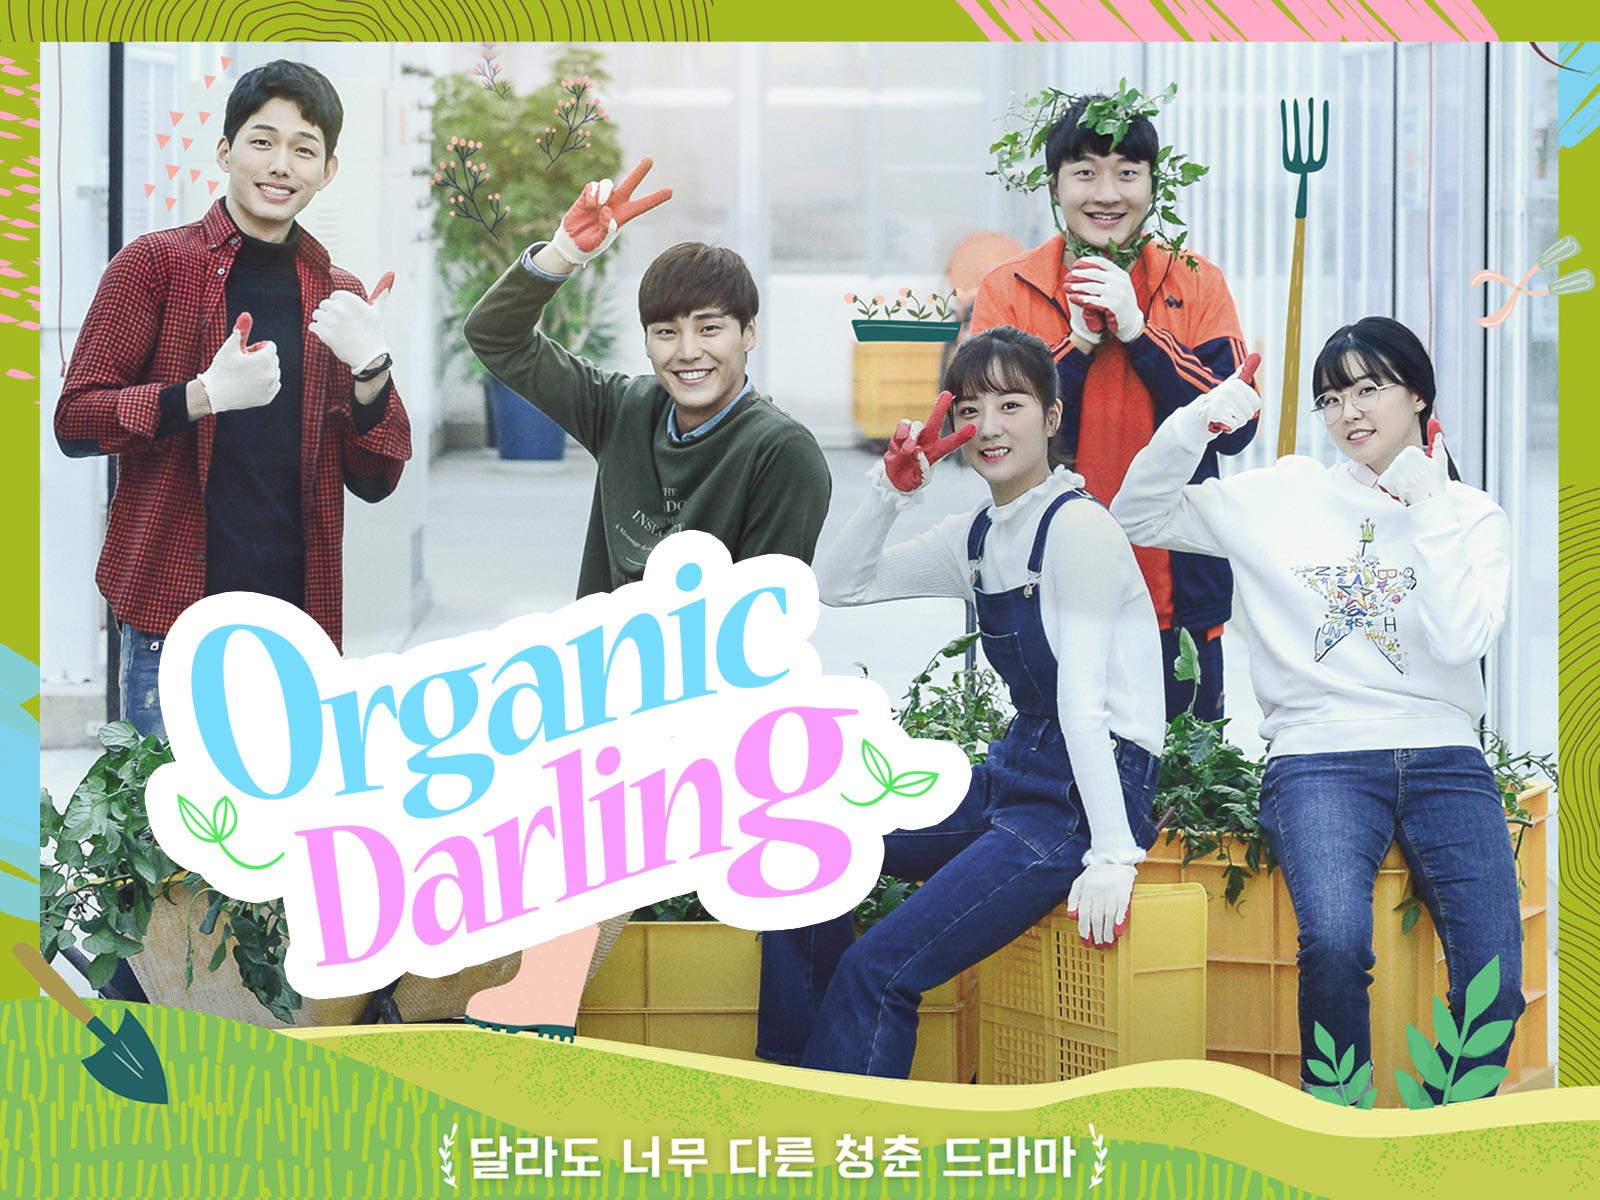 Organic Darling 2019 S01E01 Hindi Dubbed ORG 720p HDRip 300MB Download